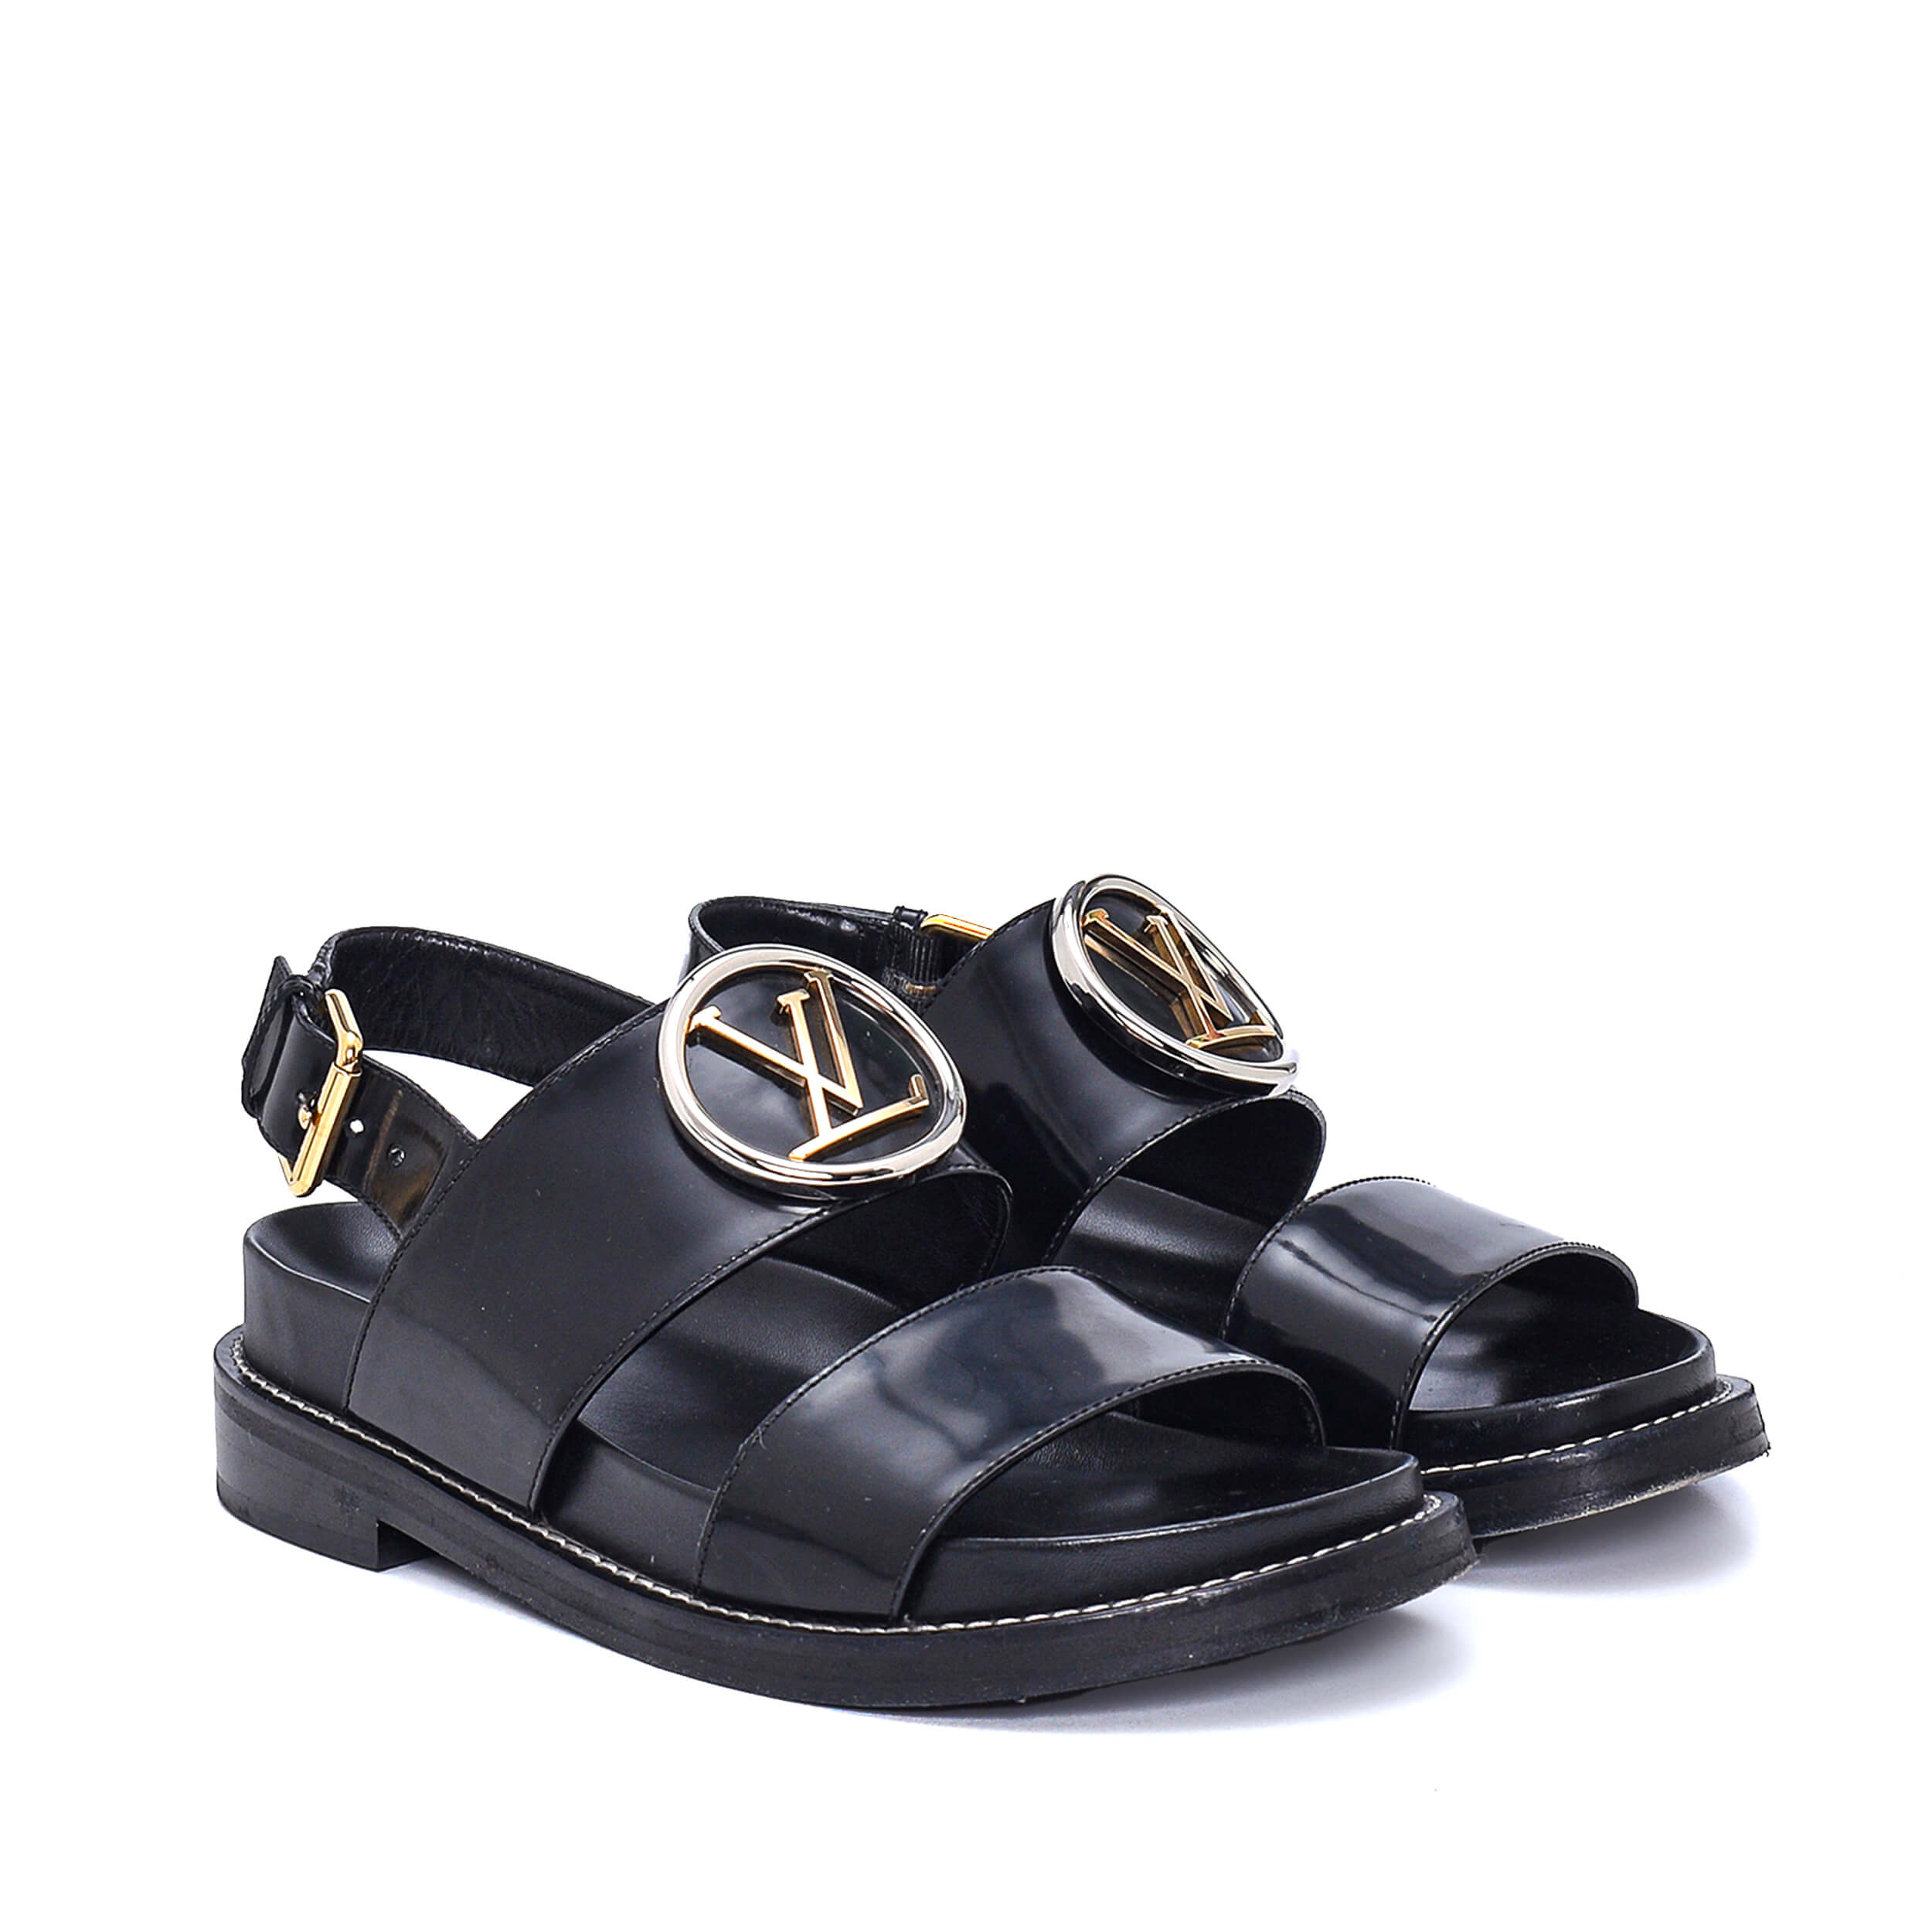 Louis Vuitton - Black Patent Leather LV Buckle Detail Sandals